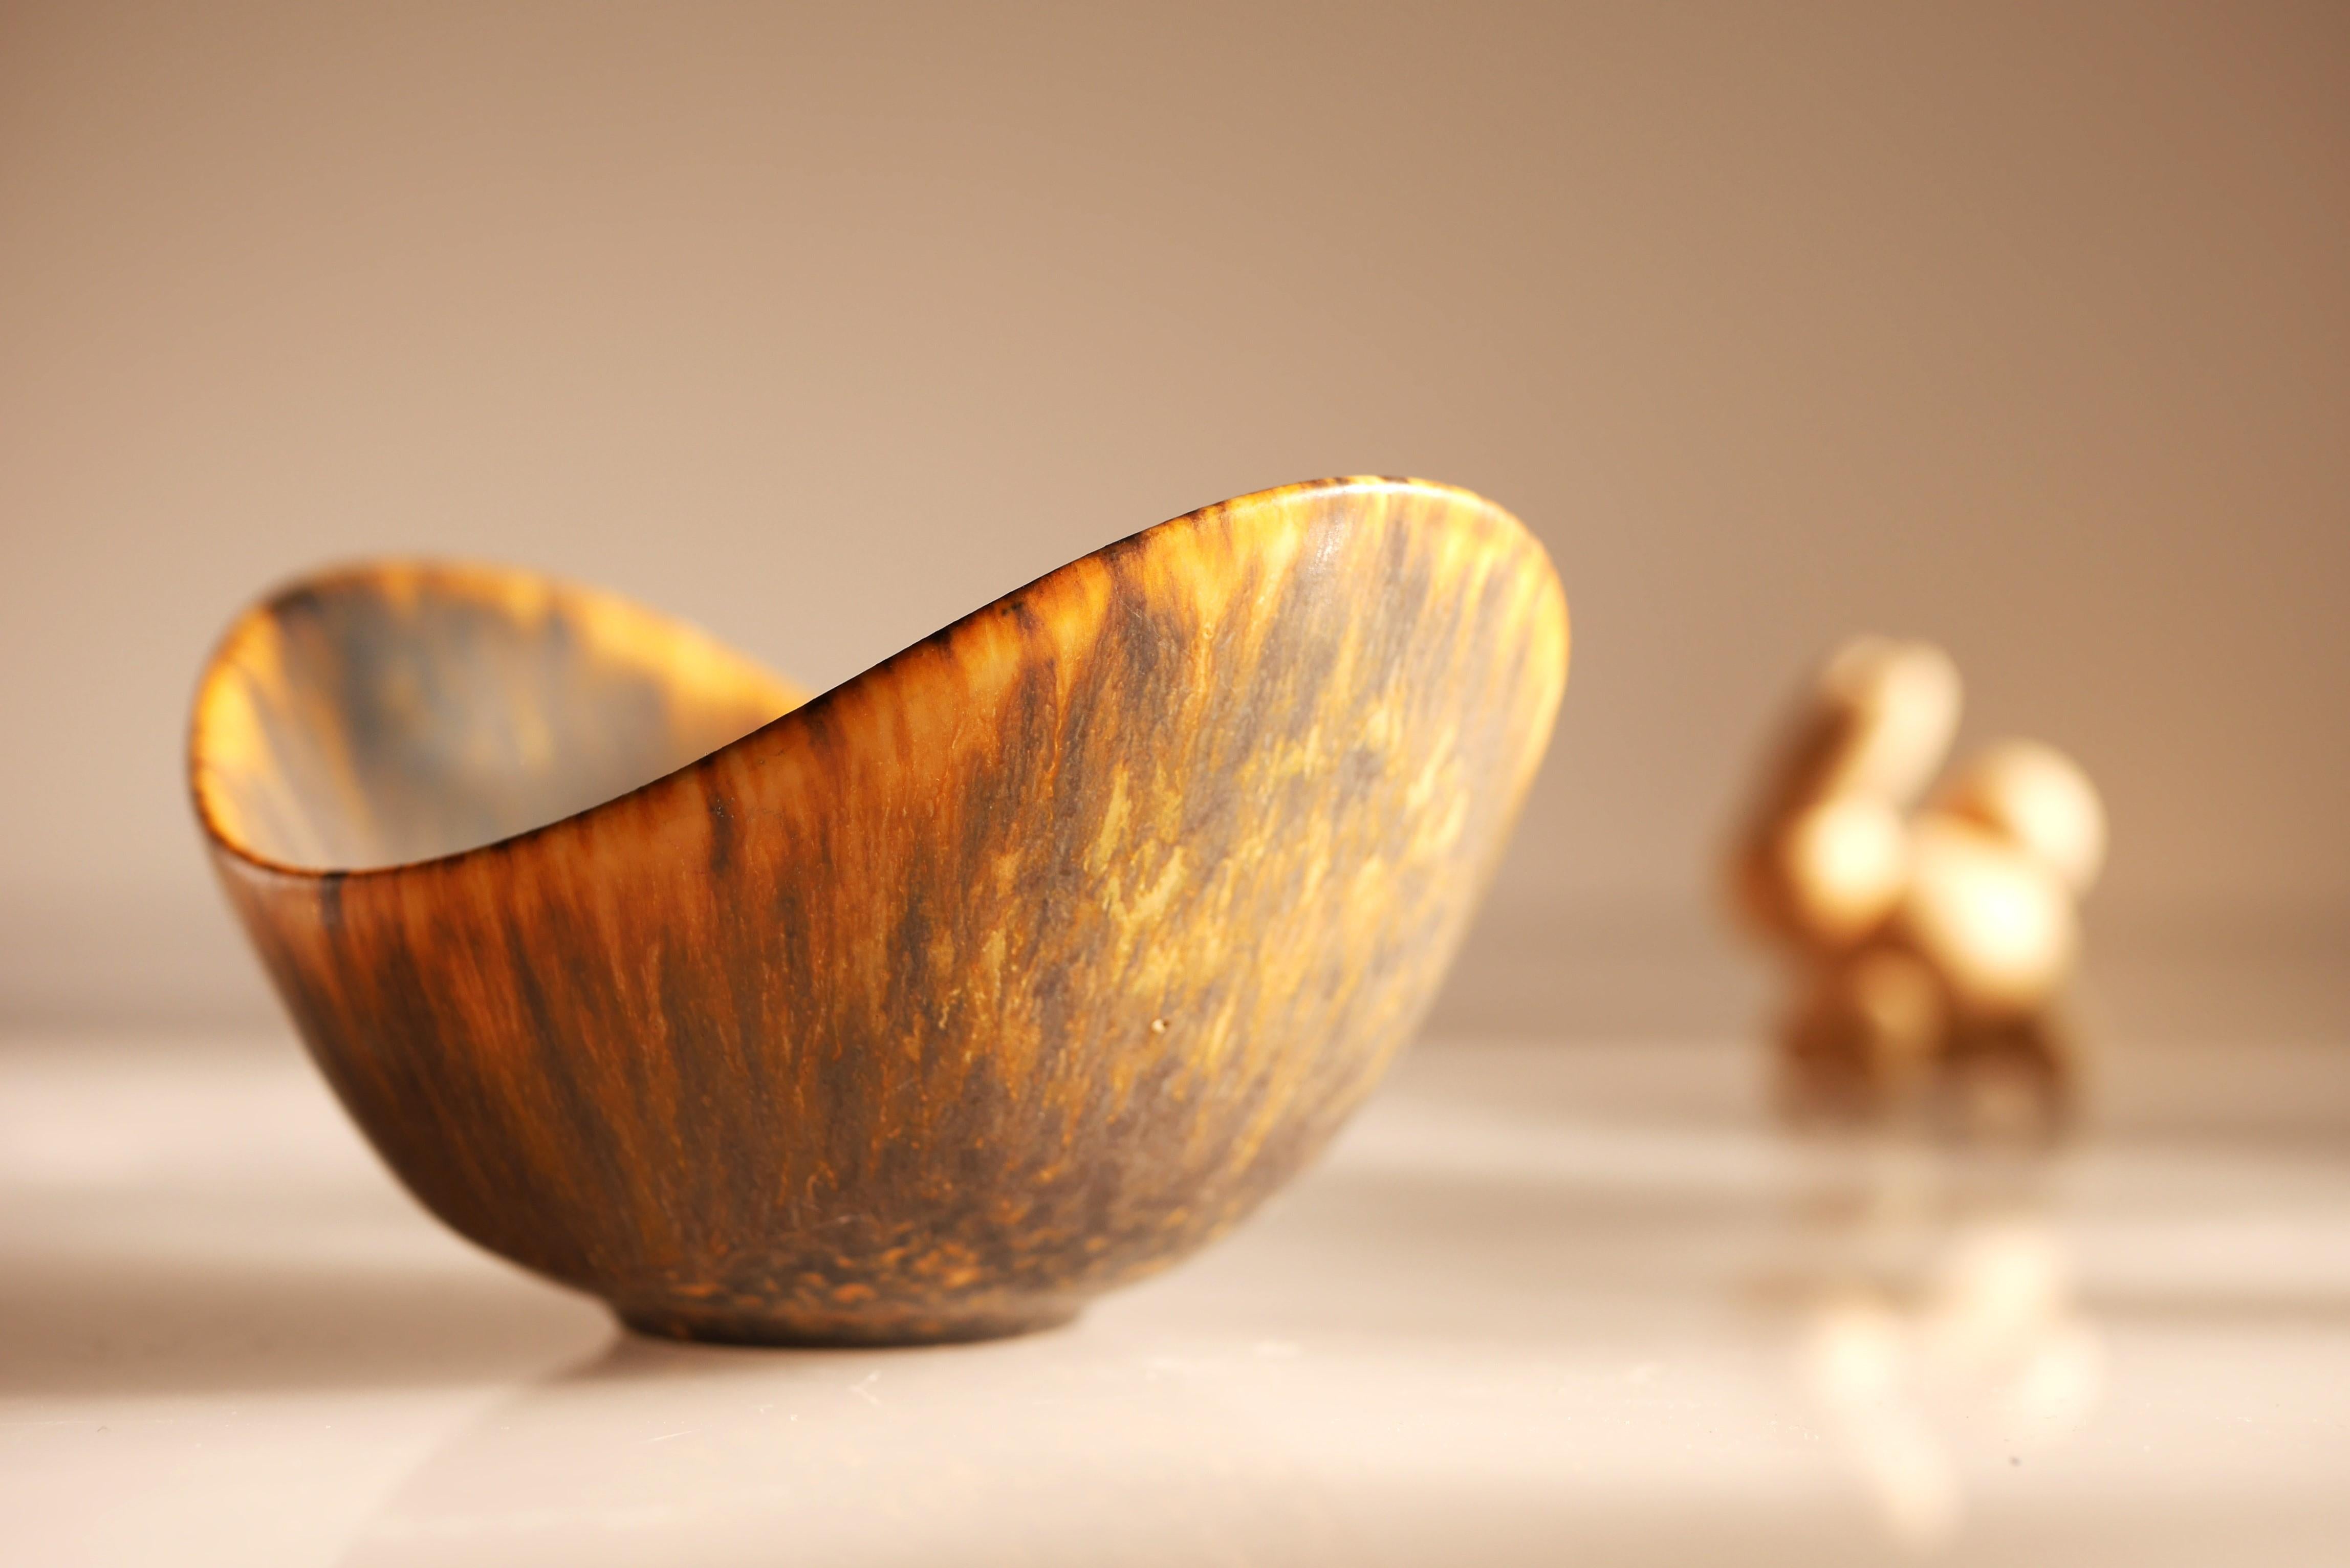 Ceramic miniature bowl known as 